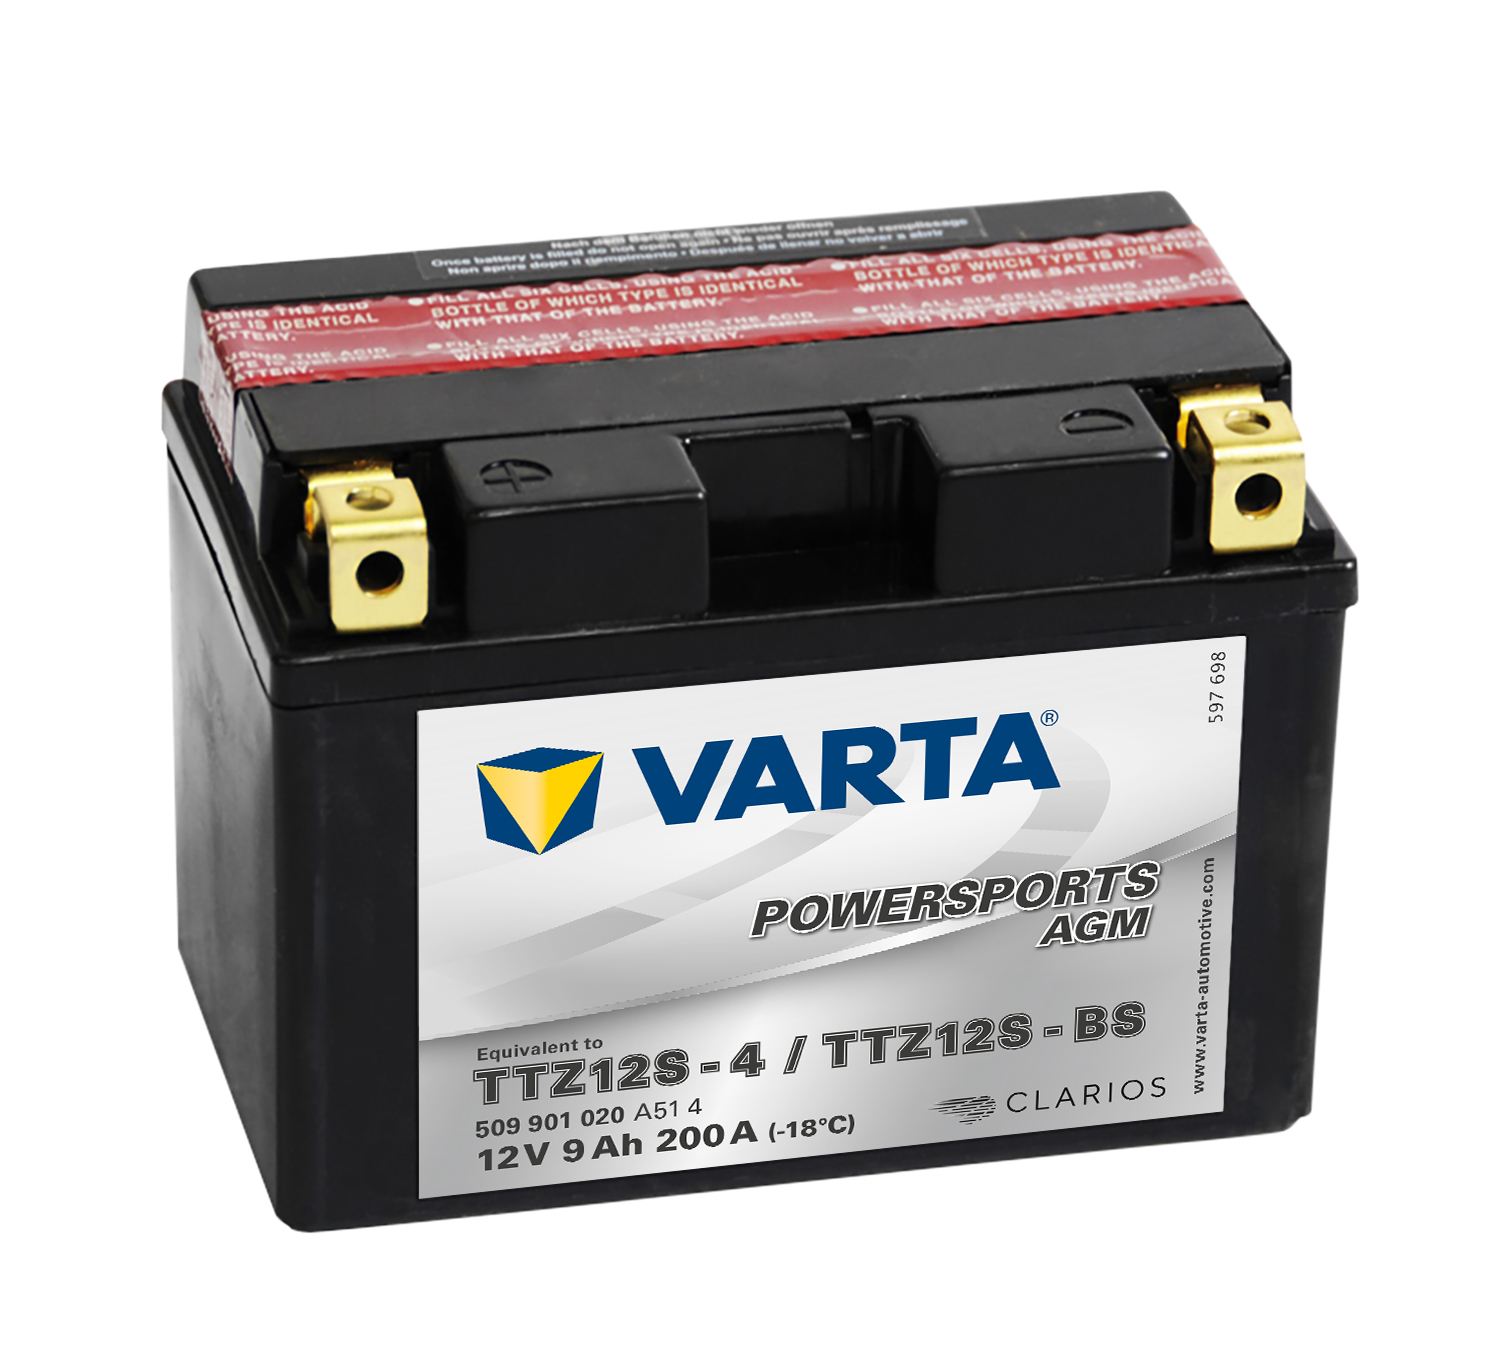 VARTA POWERSTART AGM Motorradbatterie 509 901 020 